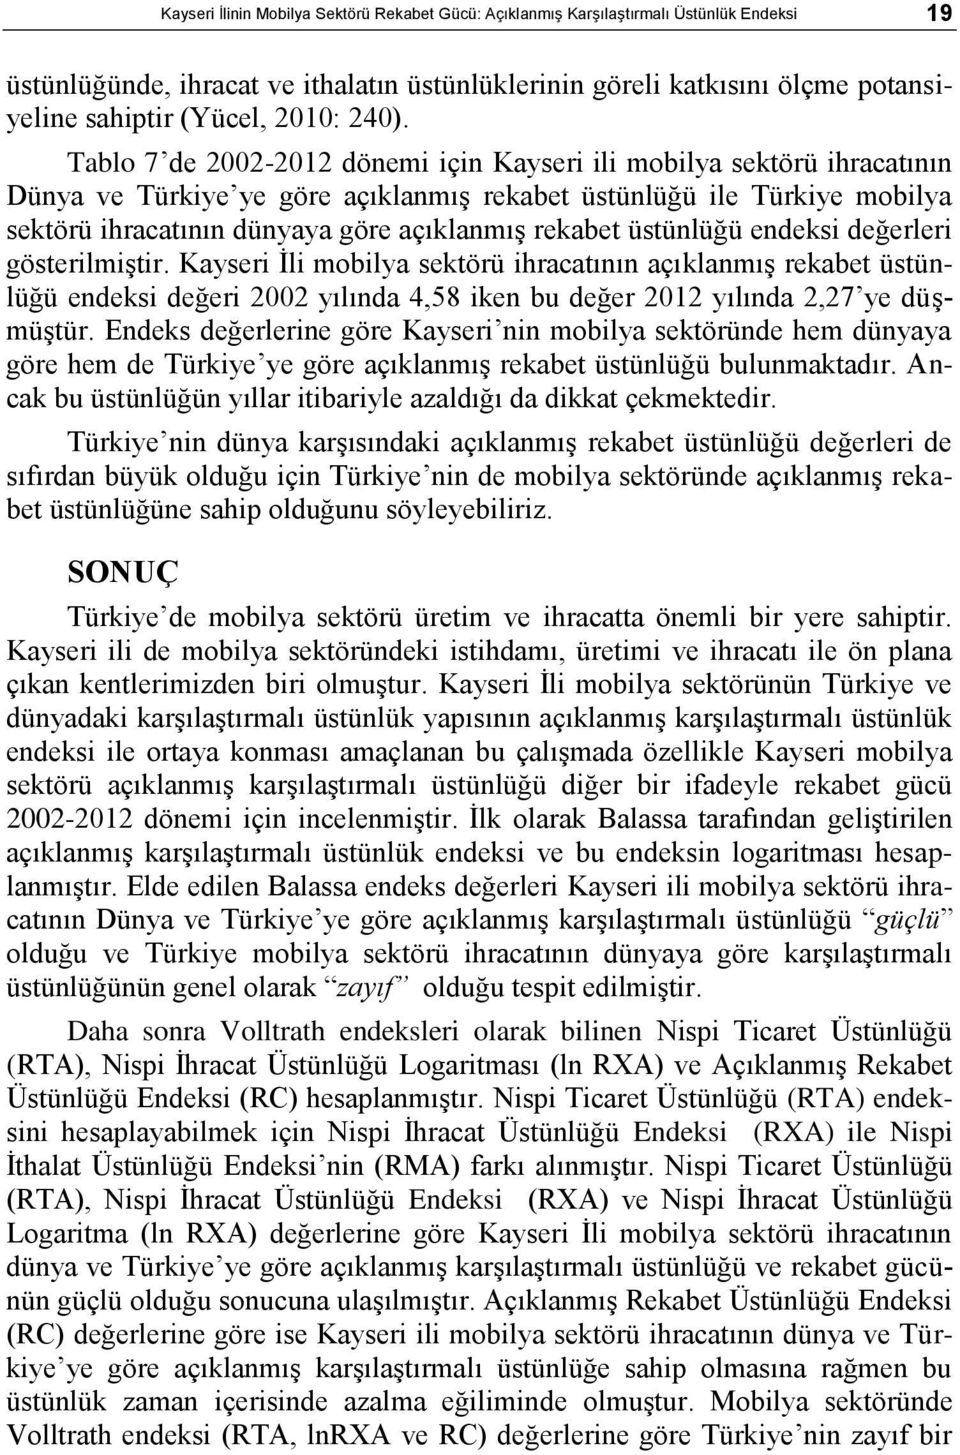 Tablo 7 de 2002-2012 dönemi için Kayseri ili mobilya sektörü ihracatının ve Türkiye ye göre açıklanmıģ rekabet üstünlüğü ile Türkiye mobilya sektörü ihracatının dünyaya göre açıklanmıģ rekabet